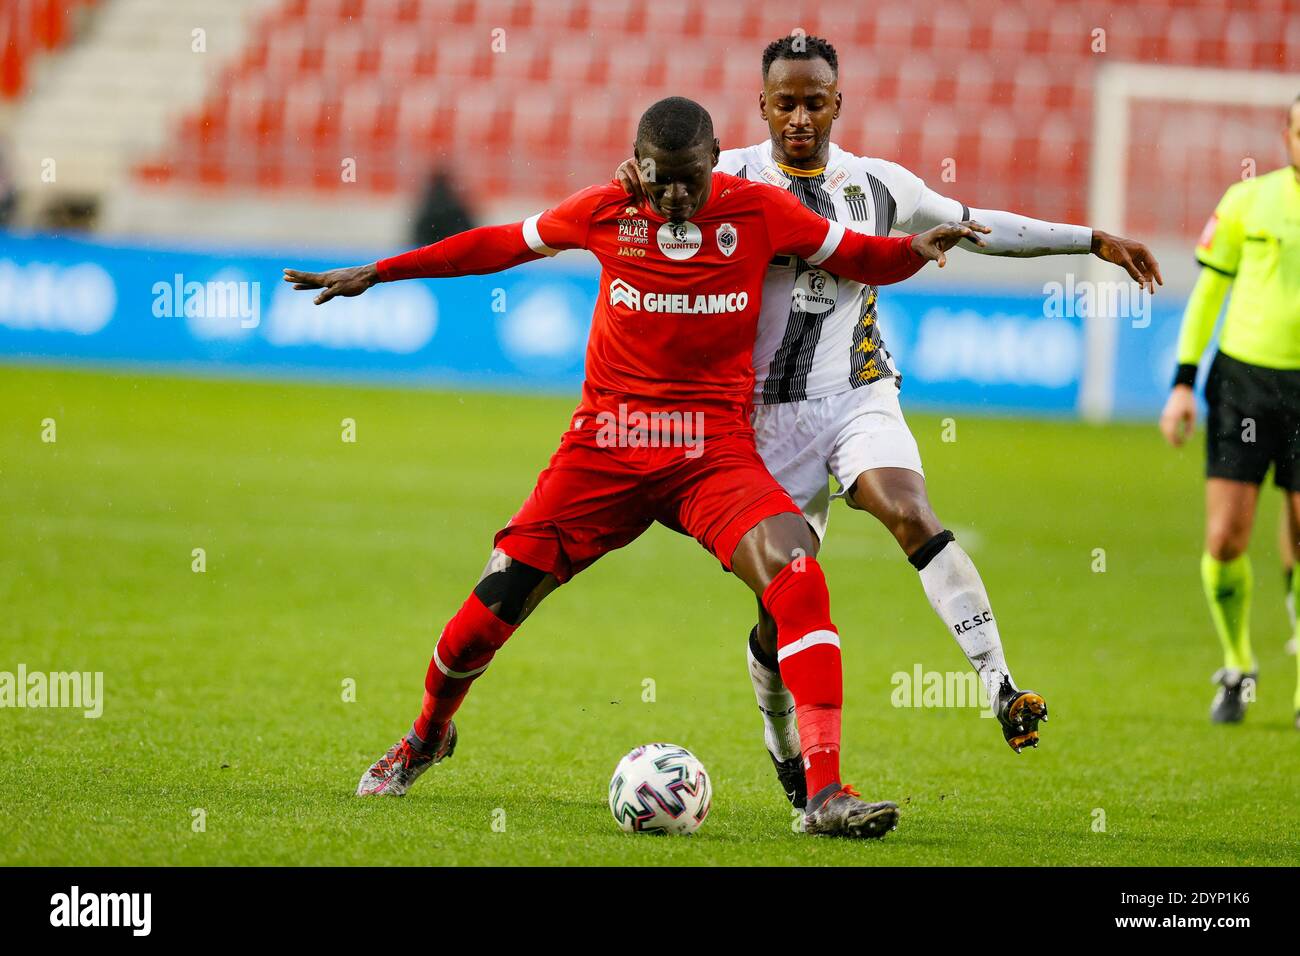 Der Antwerpener Abdoulaye Seck und der Antwerpener SaidoBerahino von Charleroi kämpfen bei einem Fußballspiel zwischen dem Royal Antwerp FC und Sporting Charleroi, Sund, um den Ball Stockfoto